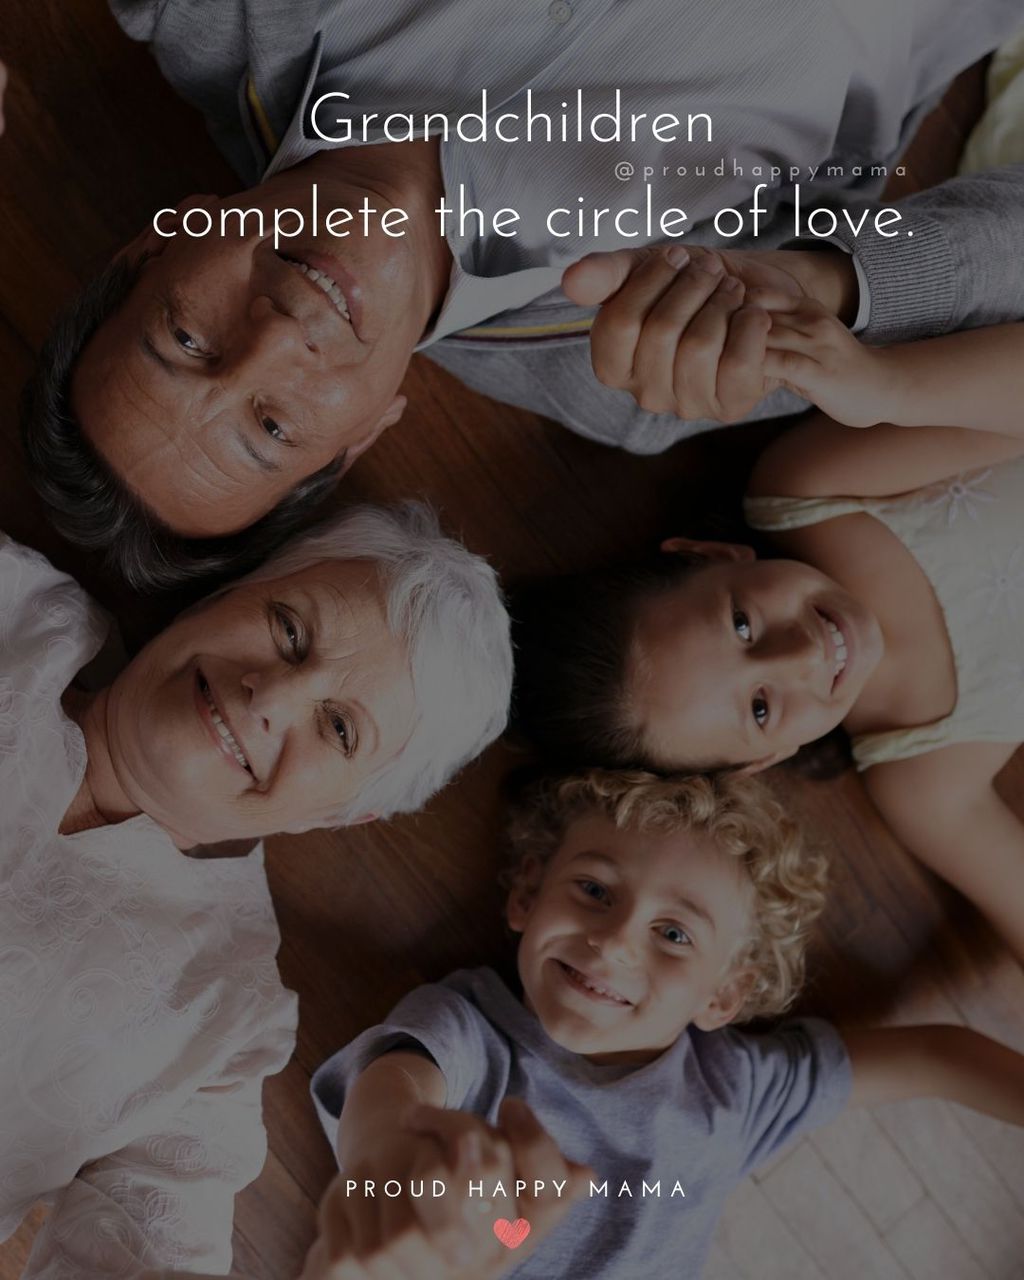 Quotes for Grandchildren - Grandchildren complete the circle of love.